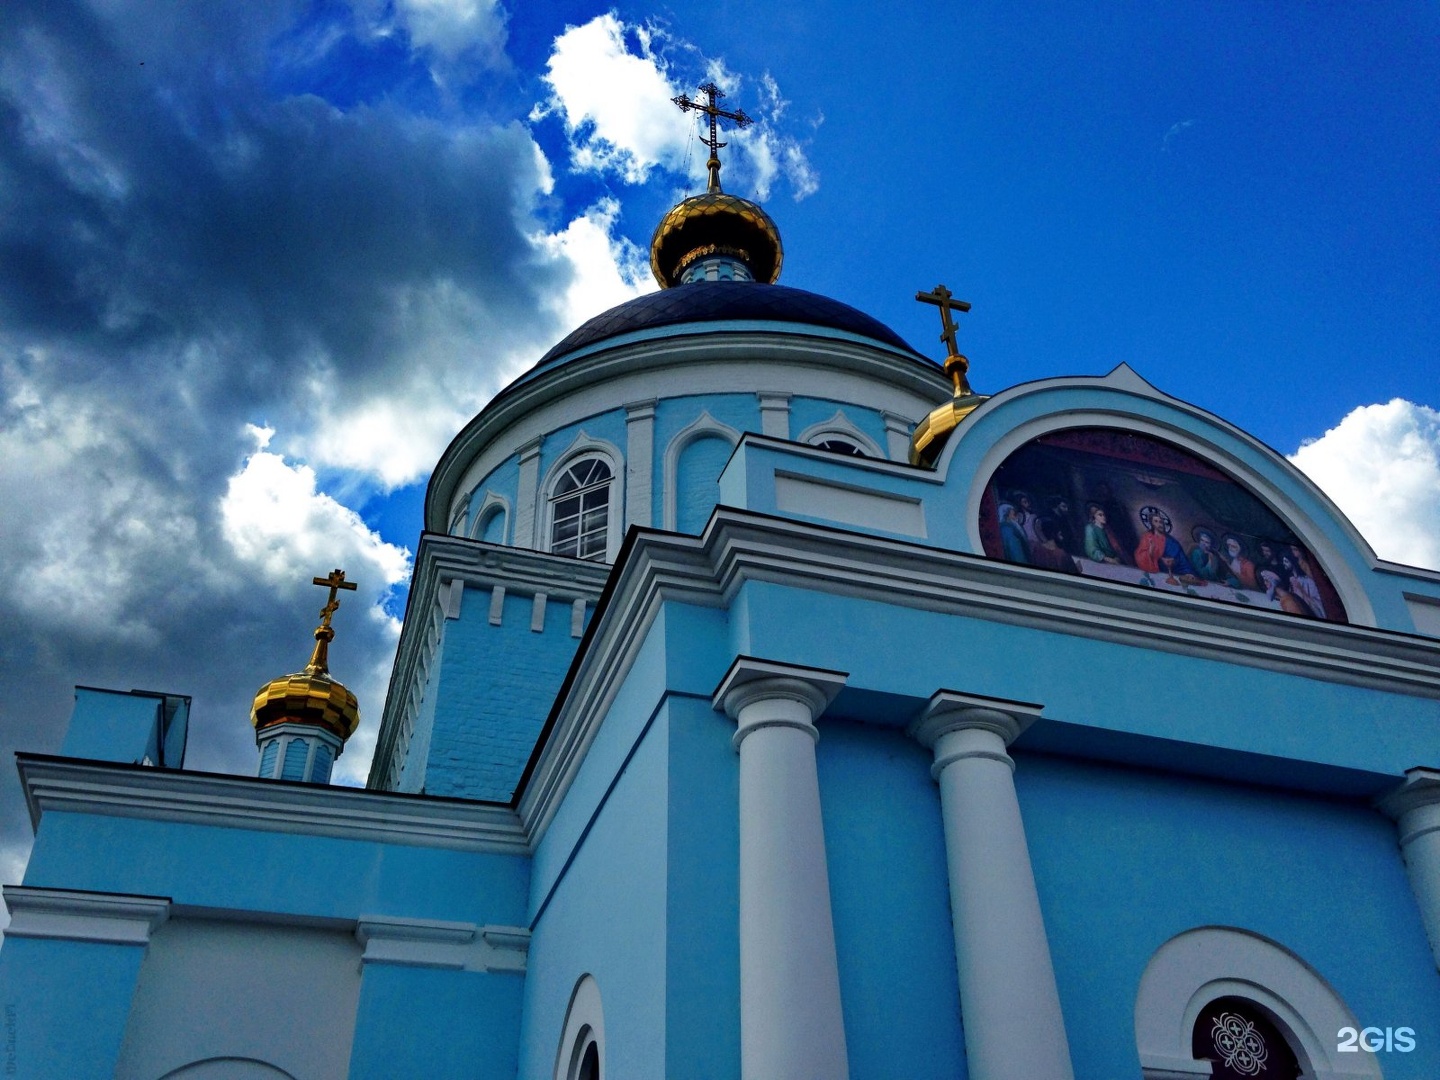 Храм в честь Казанской иконы Пресвятой Богородицы